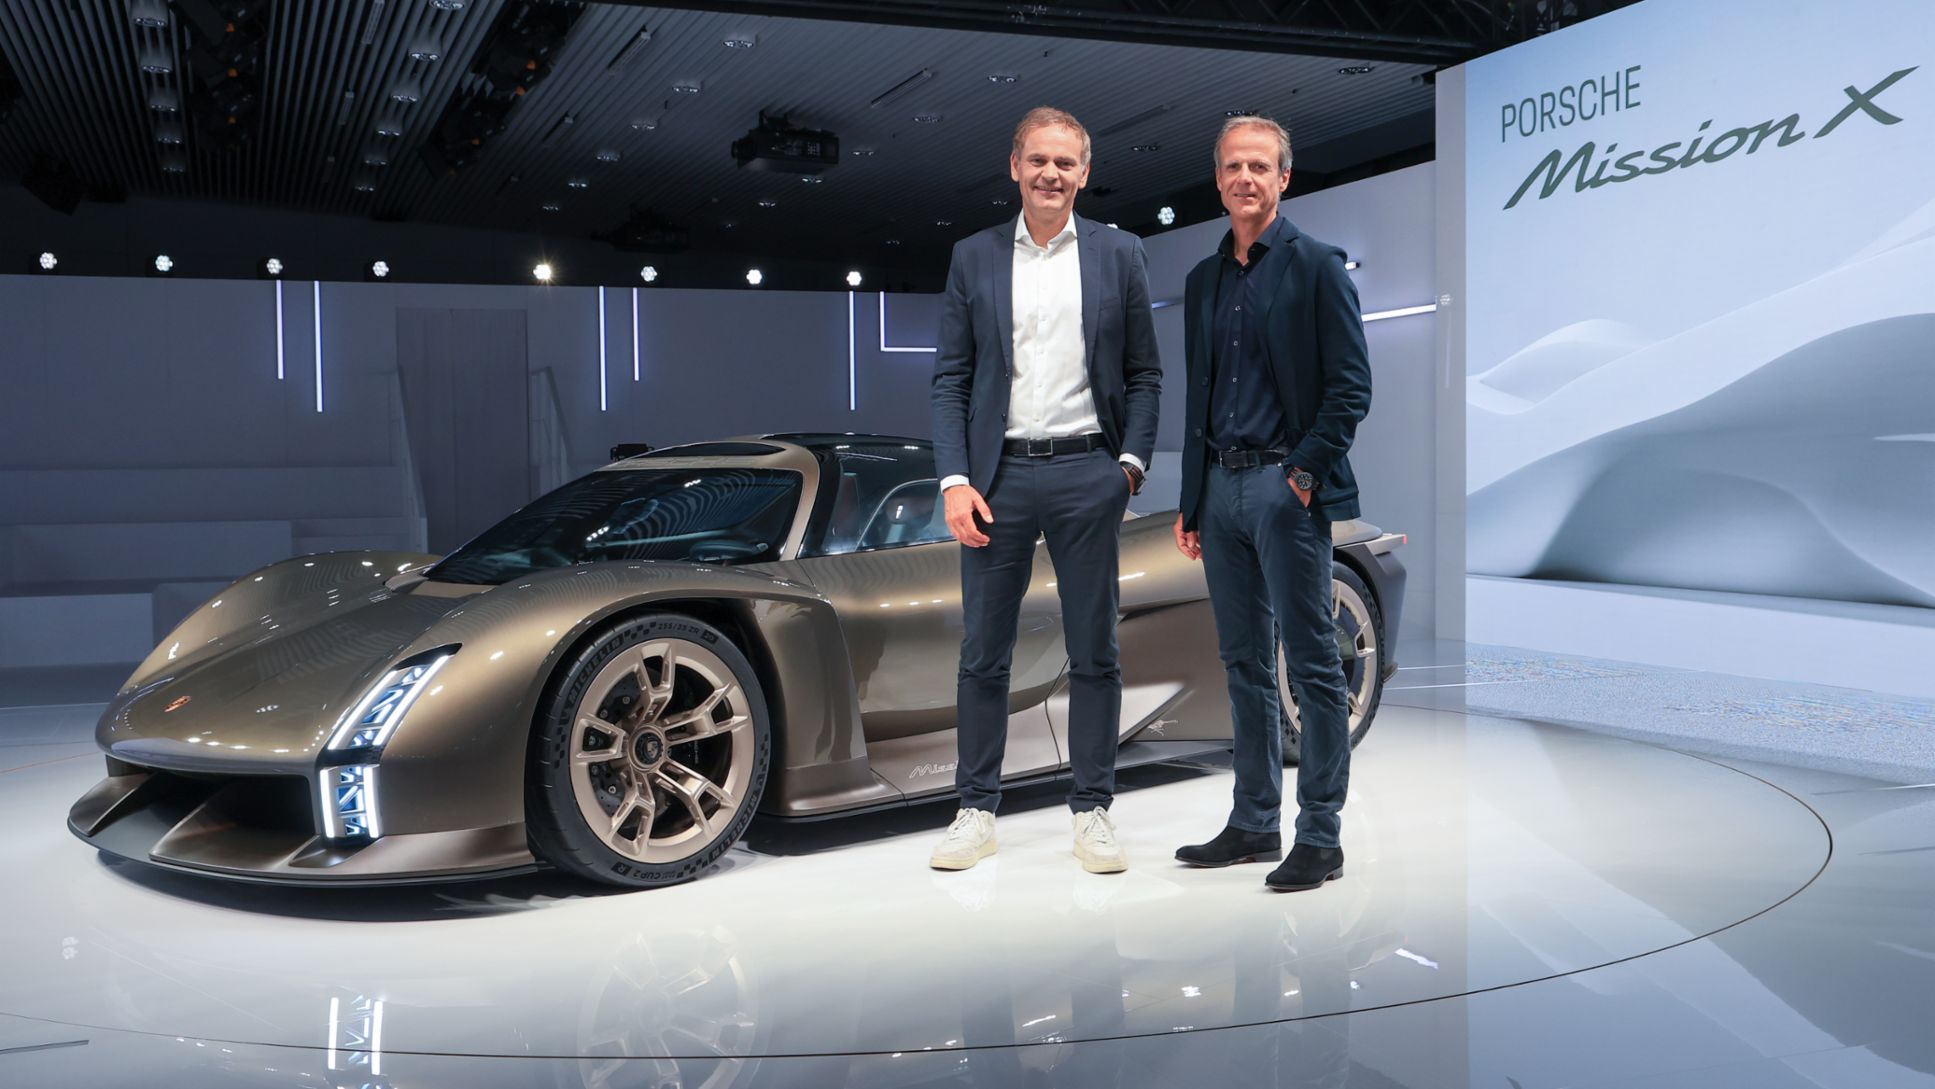 Oliver Blume, Président du conseil d'administration de Porsche AG, et Michael Mauer, vice-président du Style Porsche, ont présenté la Mission X à l'occasion de l'anniversaire "75 ans de voitures de sport Porsche" au musée Porsche.